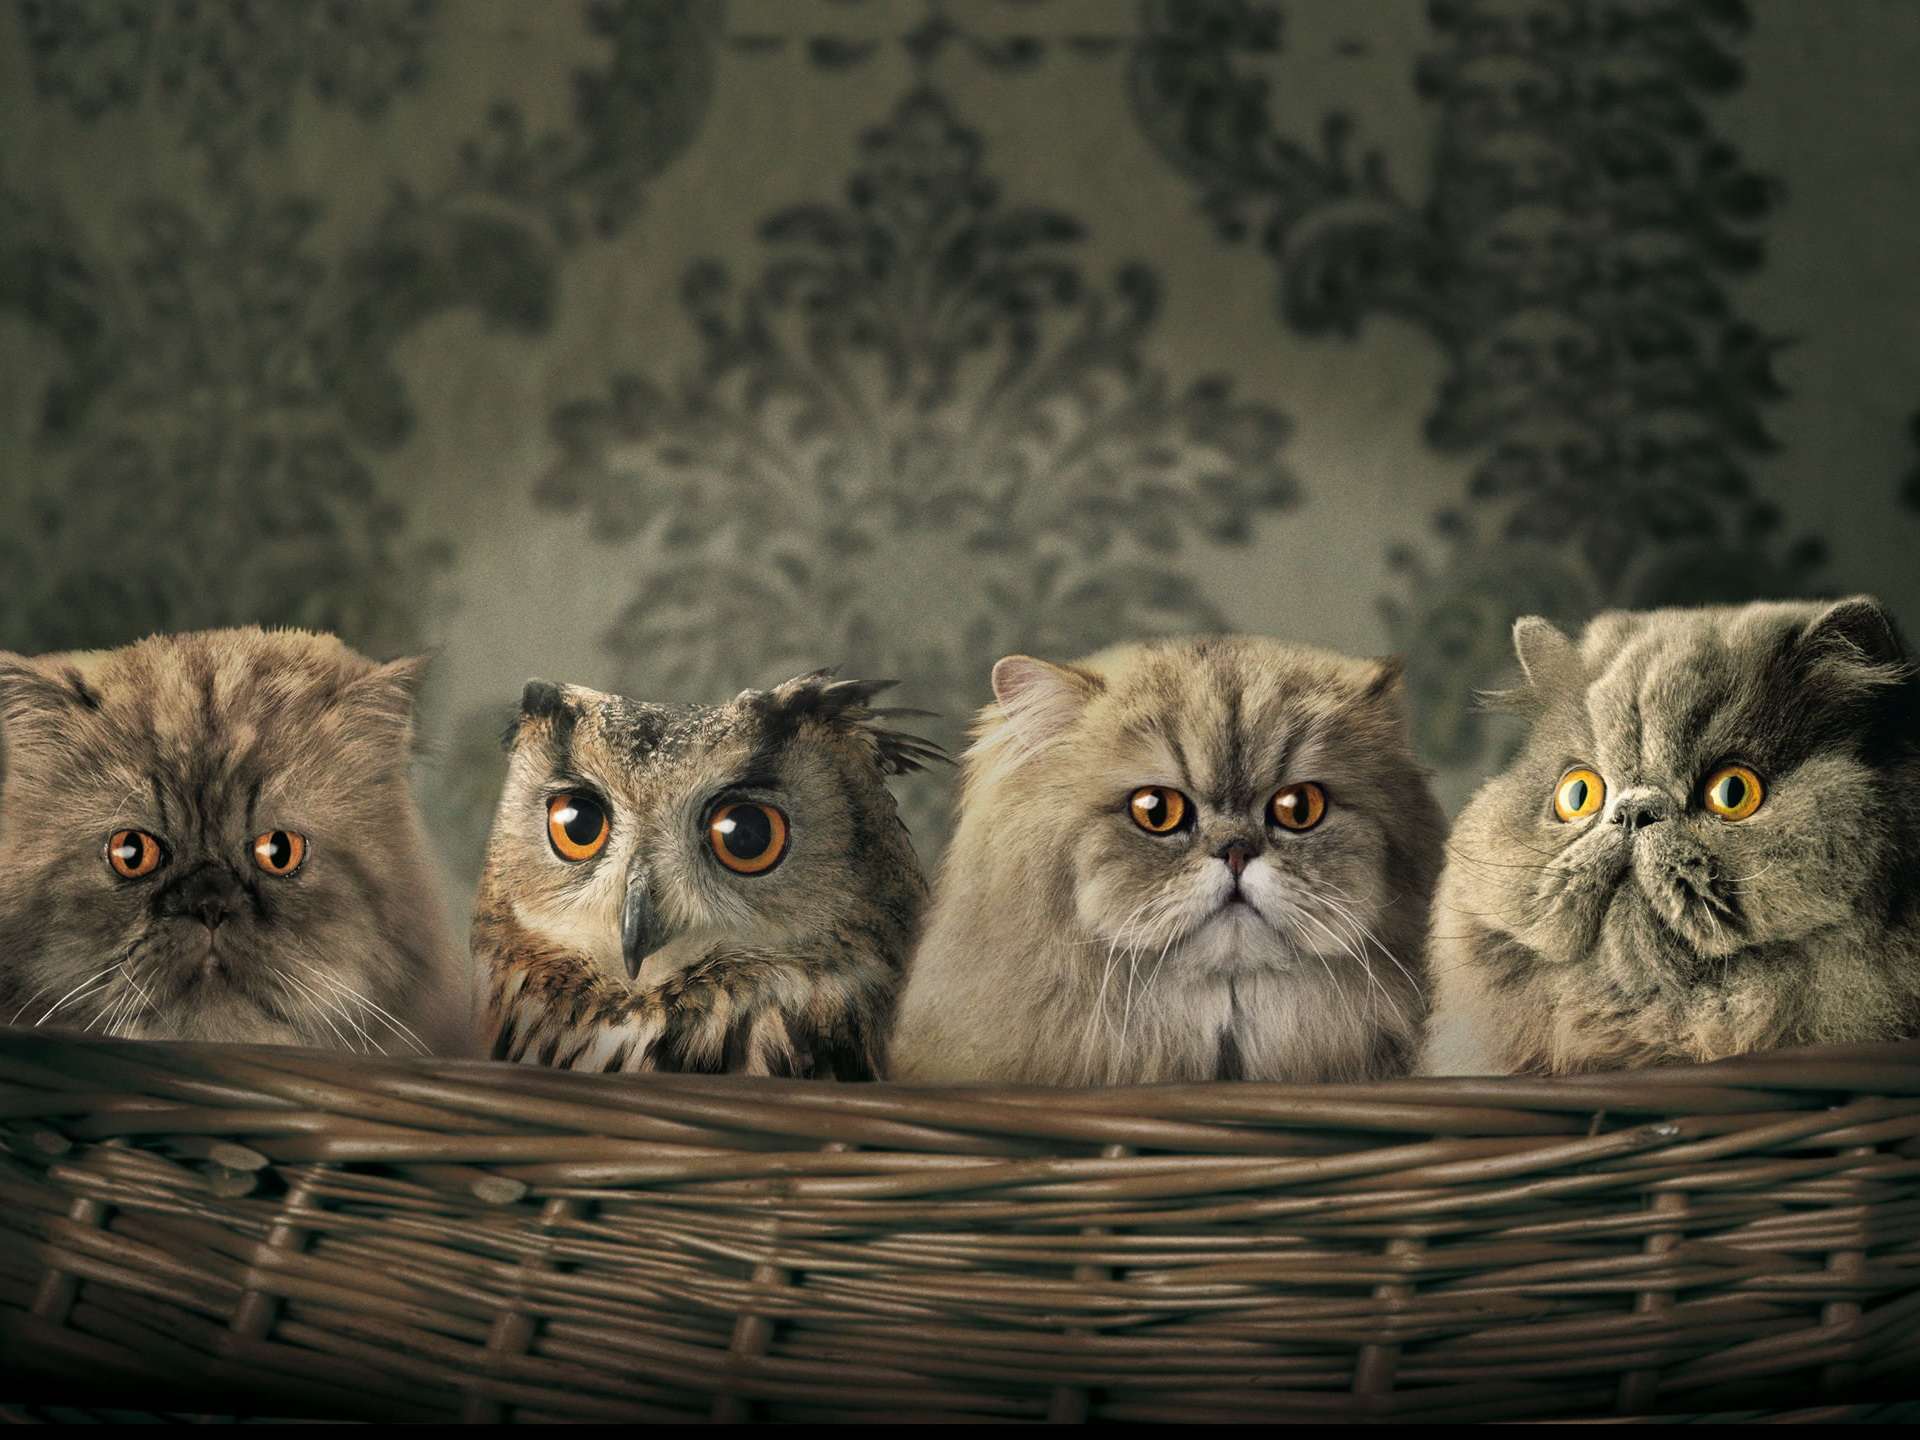 Сова спряталась среди персидских кошек, прикольная смешная картинка фото рисунок